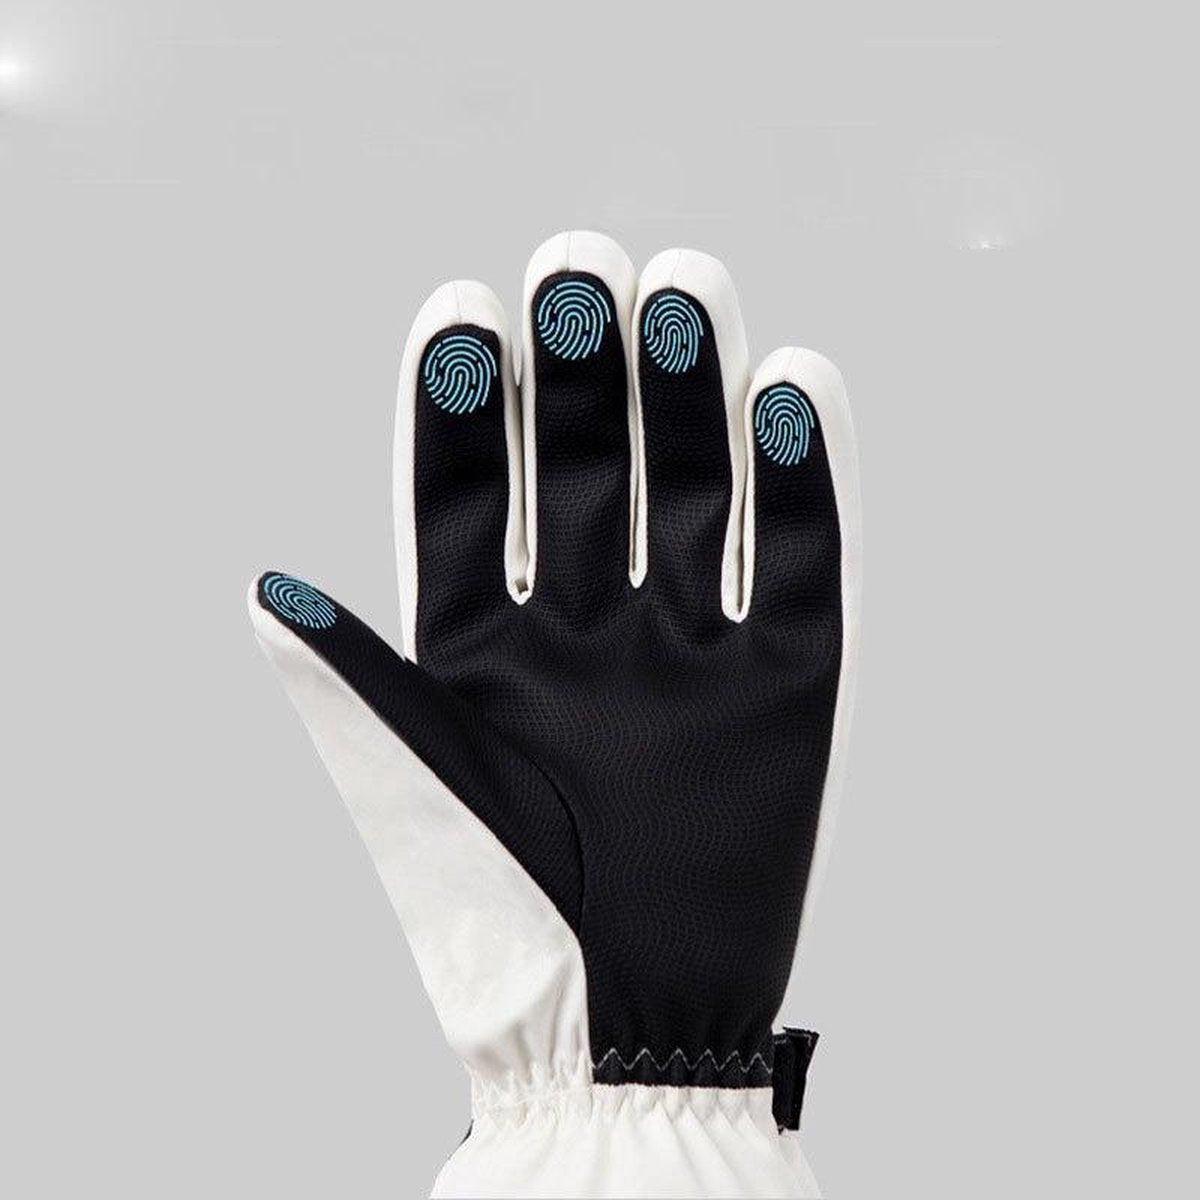 Ski handschoenen - Zwart - Maat L